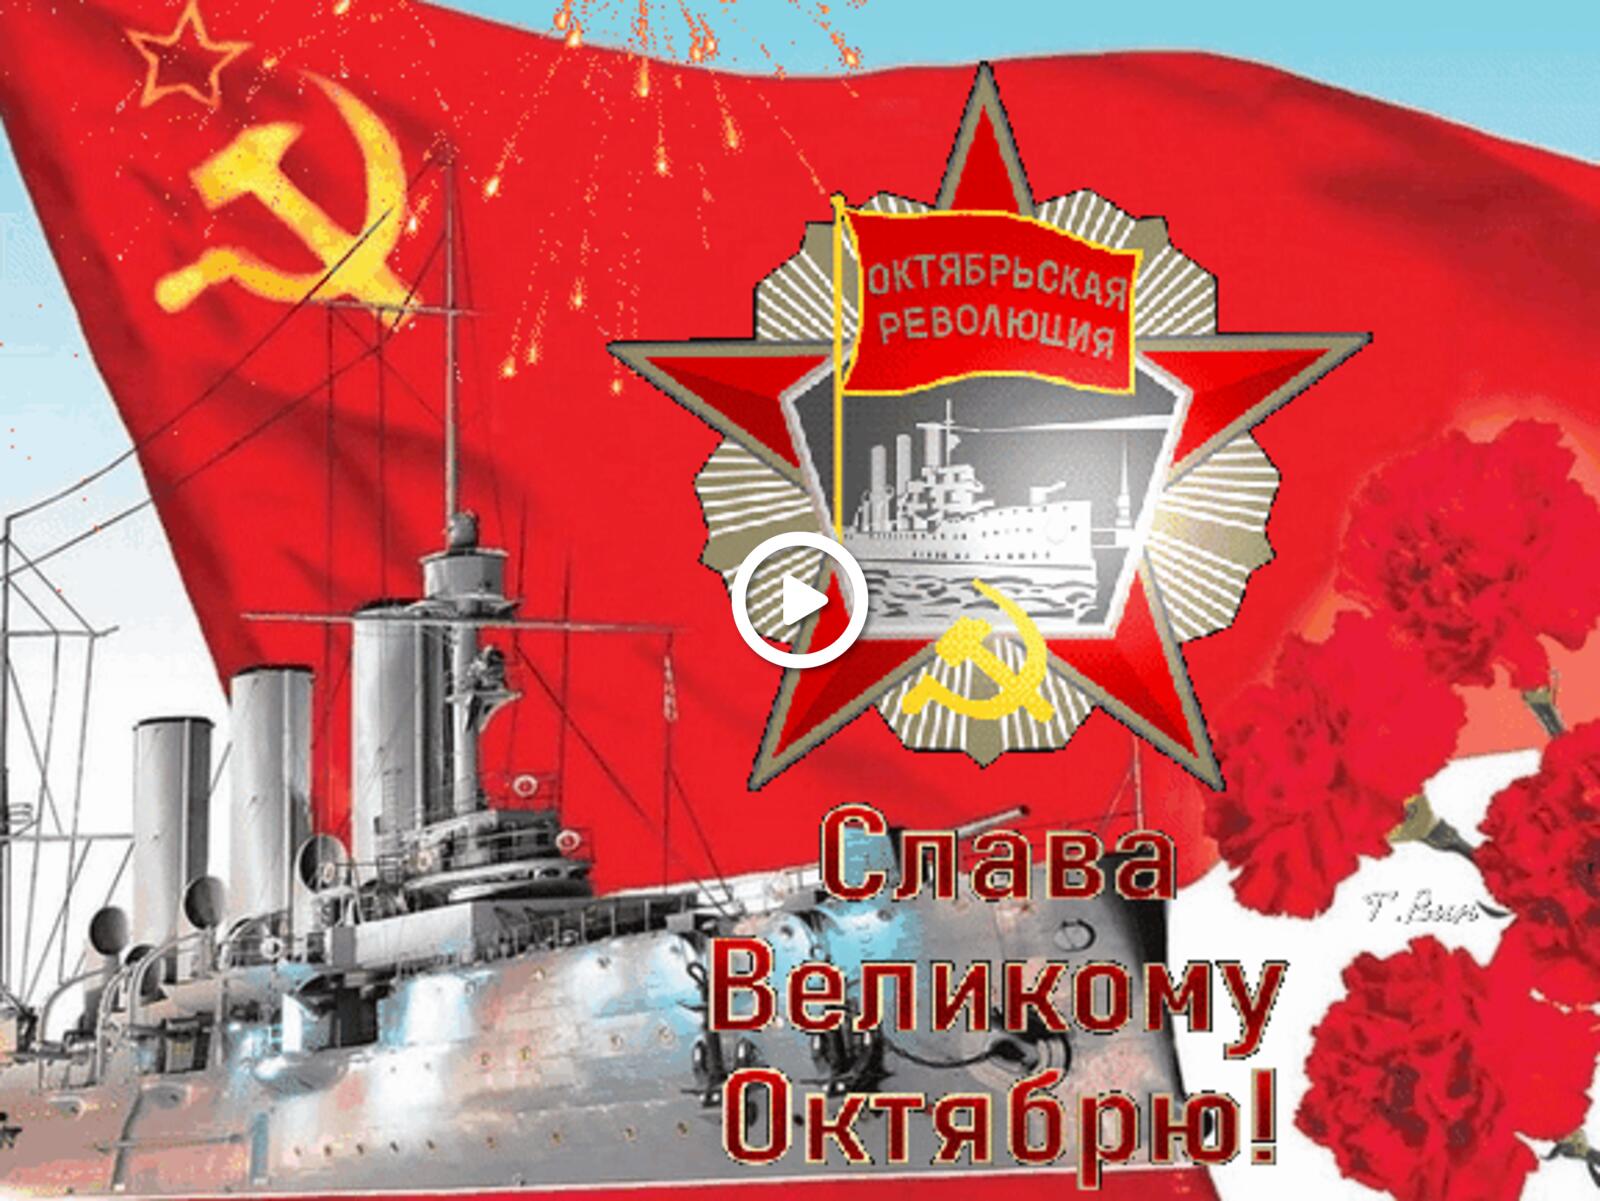 Открытка на тему день октябрьской революции флаг СССР бесплатно